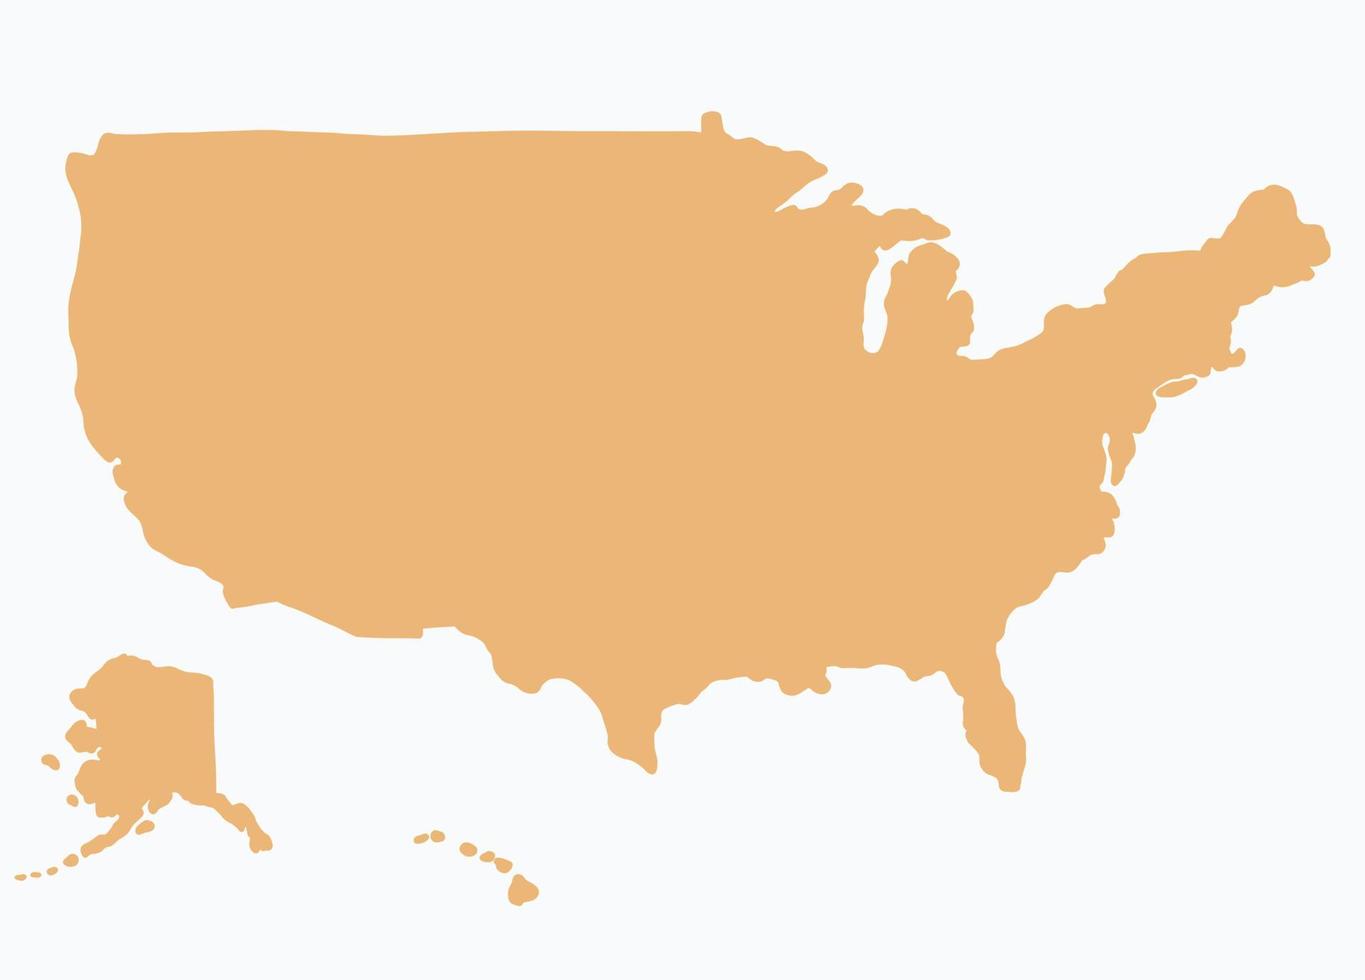 doodle frihandsteckning av karta över USA. v vektor